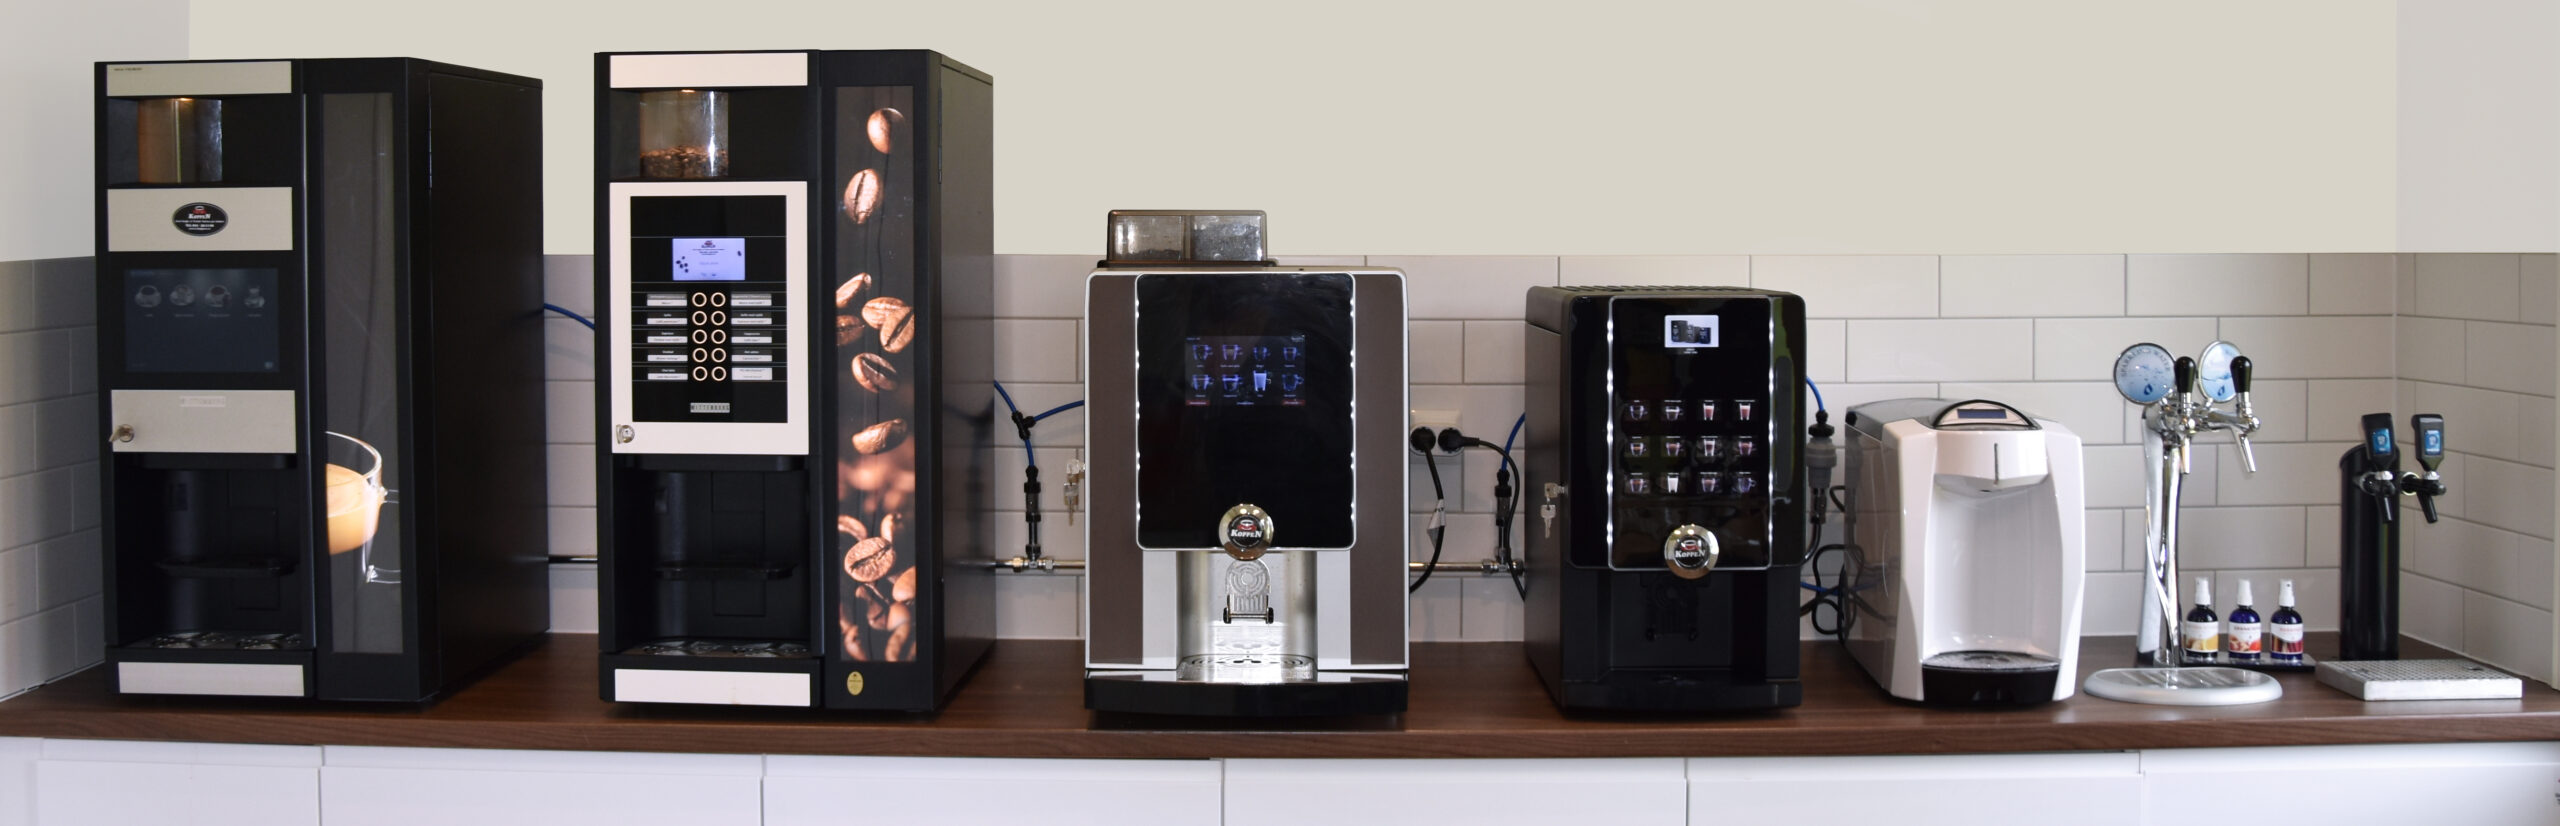 Koppens utställning Kaffeautomater